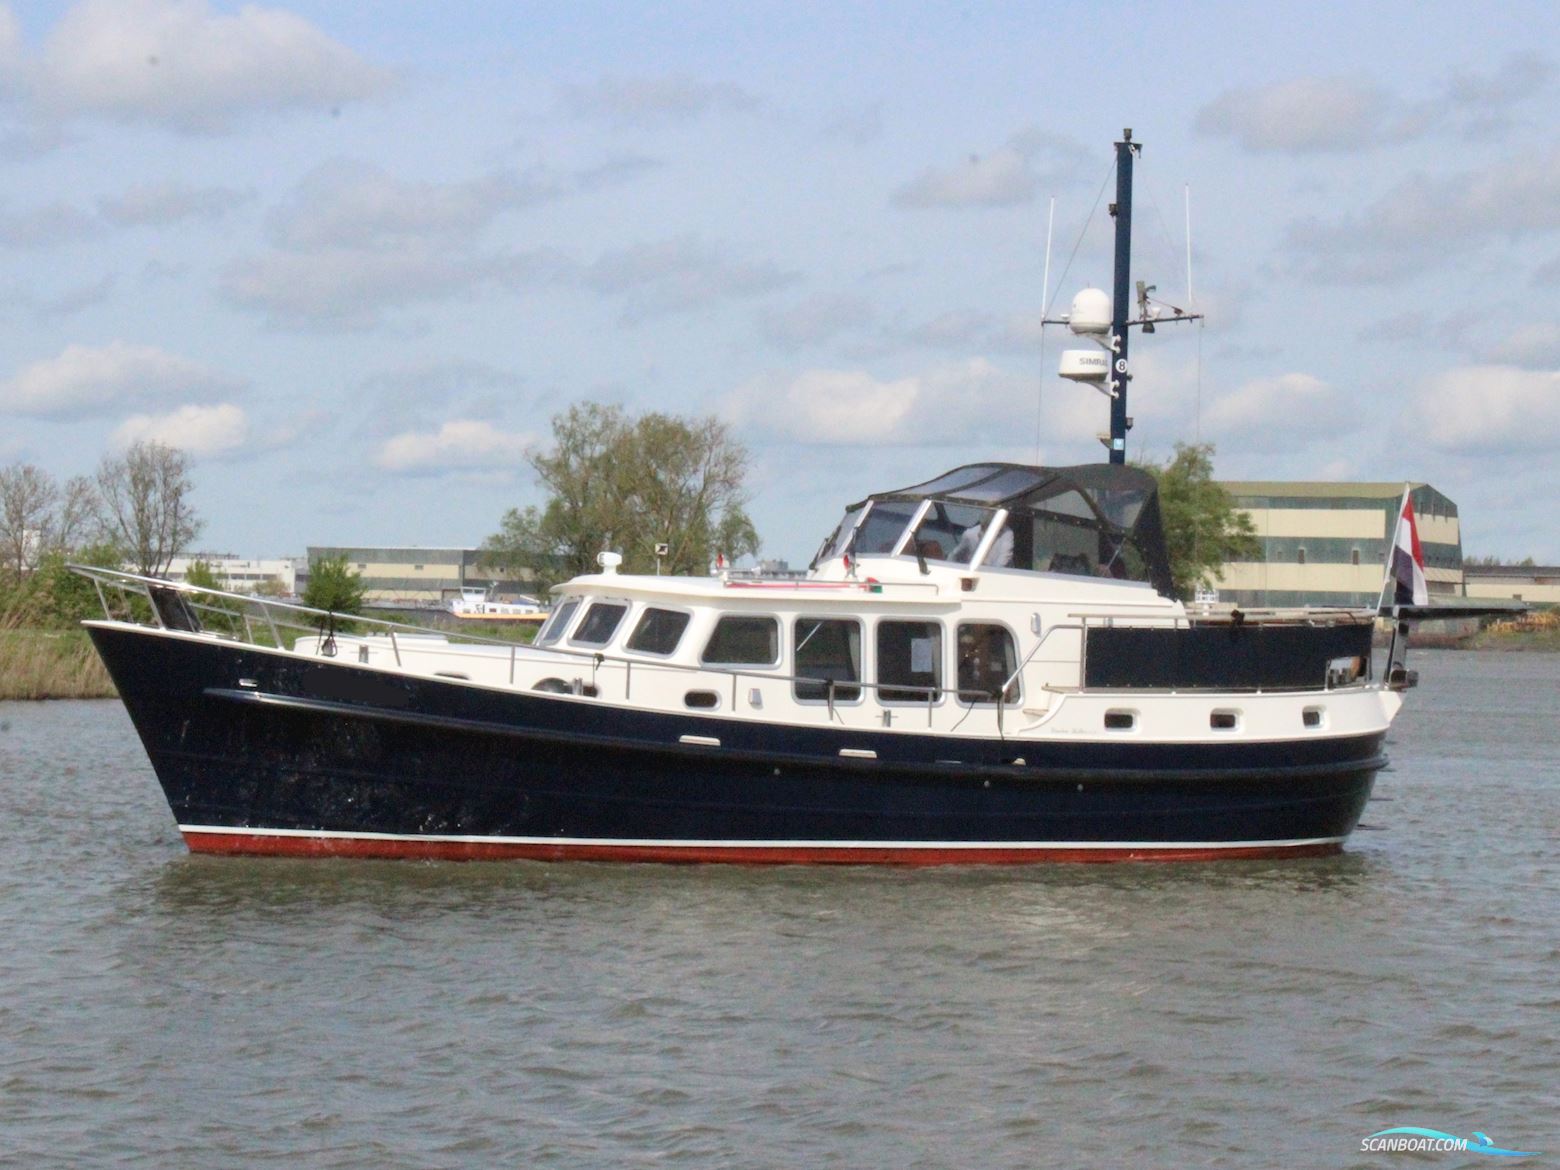 Linden Kotter 13.70 Motor boat 2009, with John Deere engine, The Netherlands